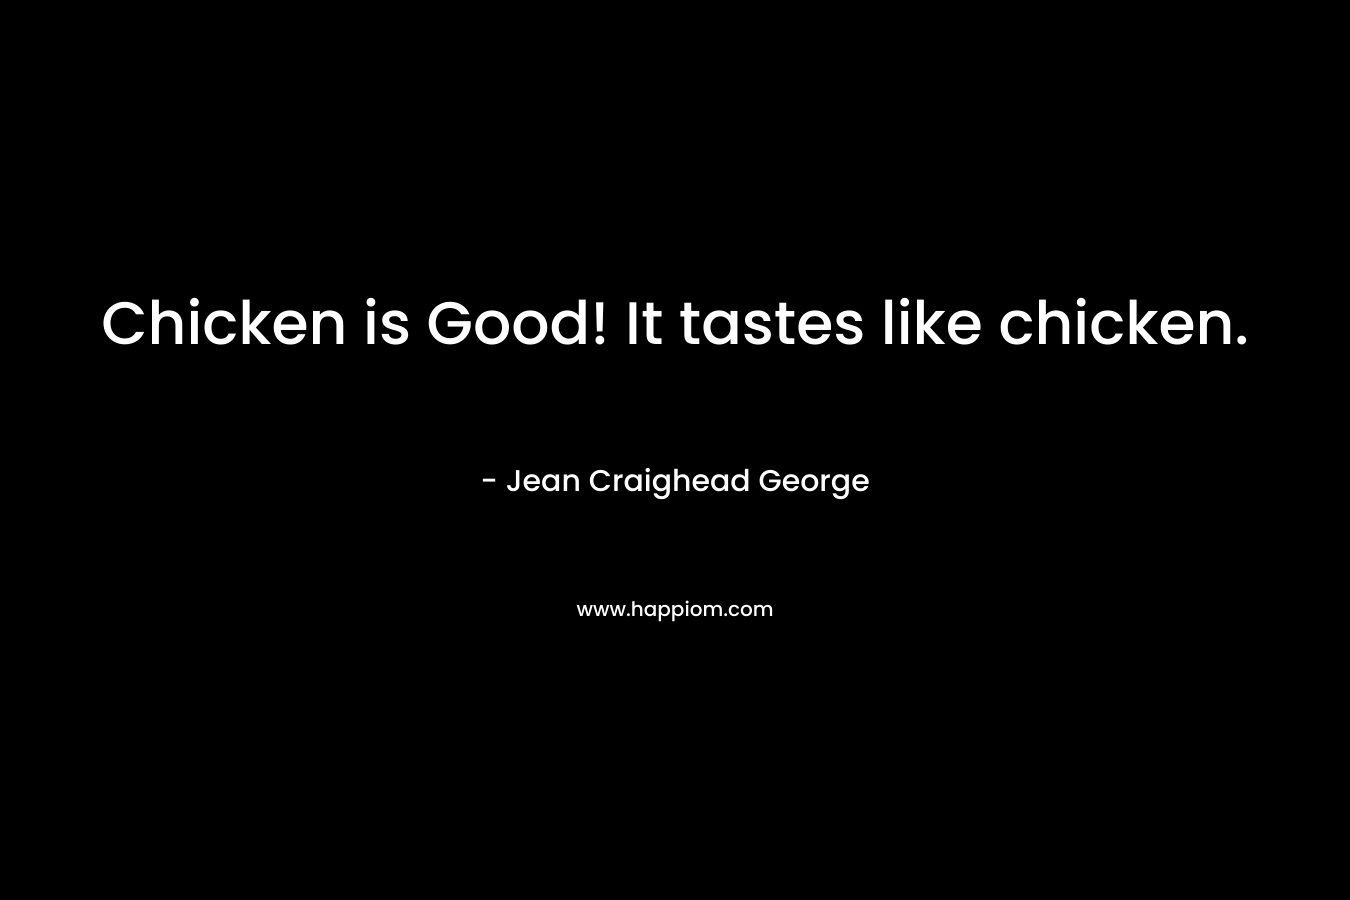 Chicken is Good! It tastes like chicken.